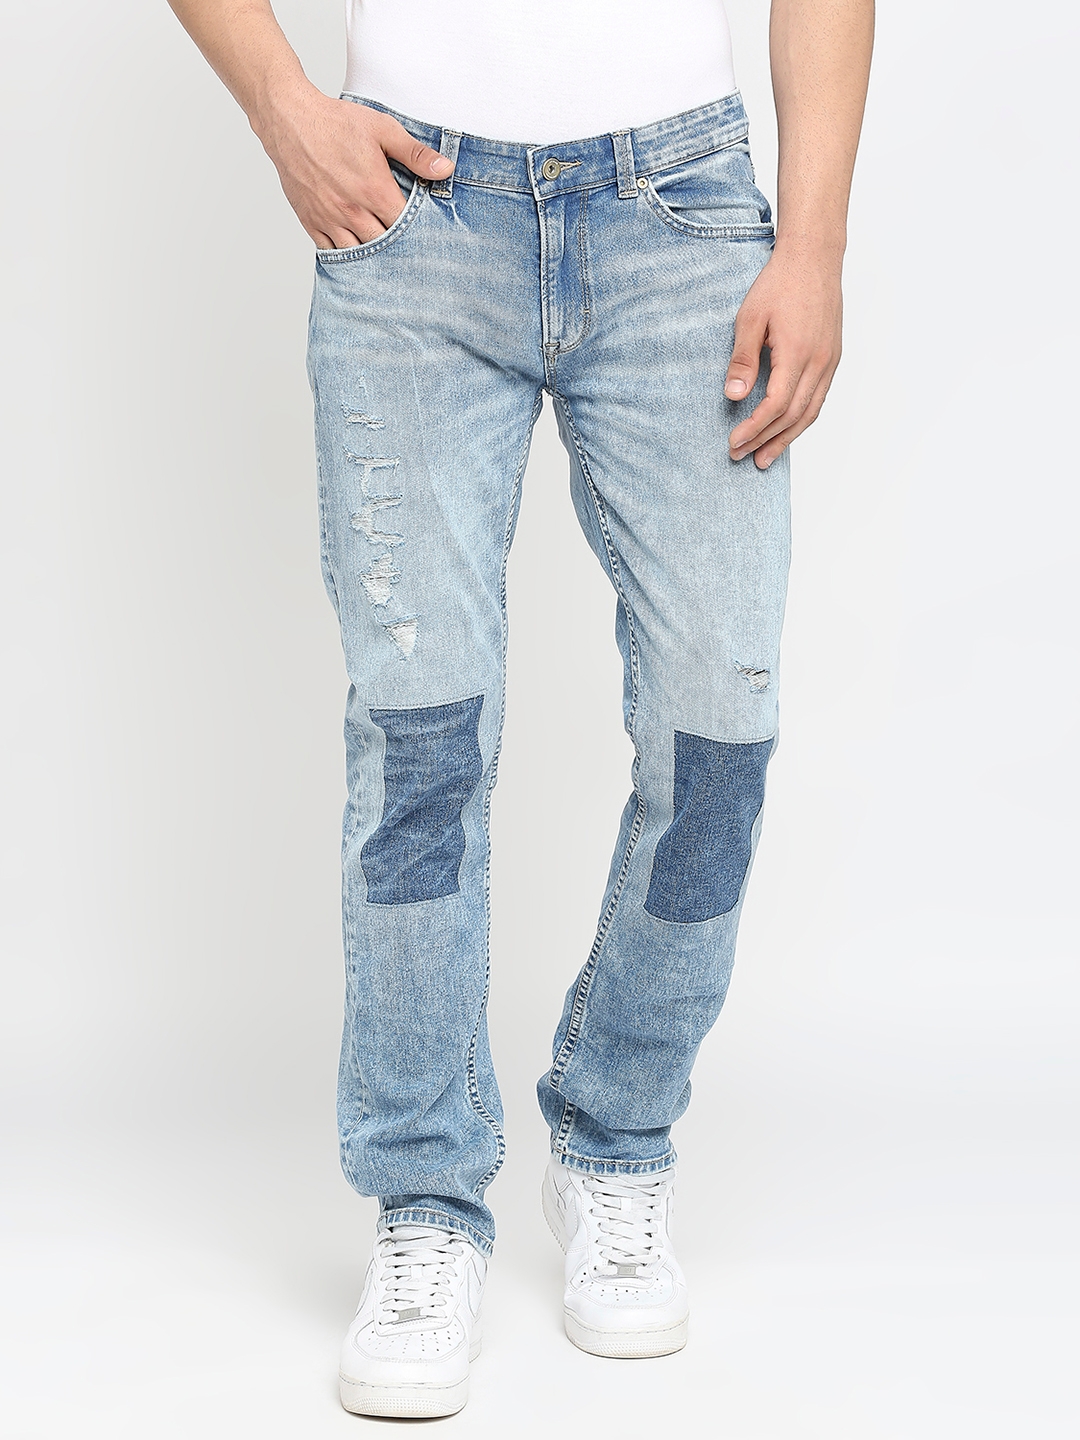 Spykar | Men's Blue Cotton Solid Jeans 0